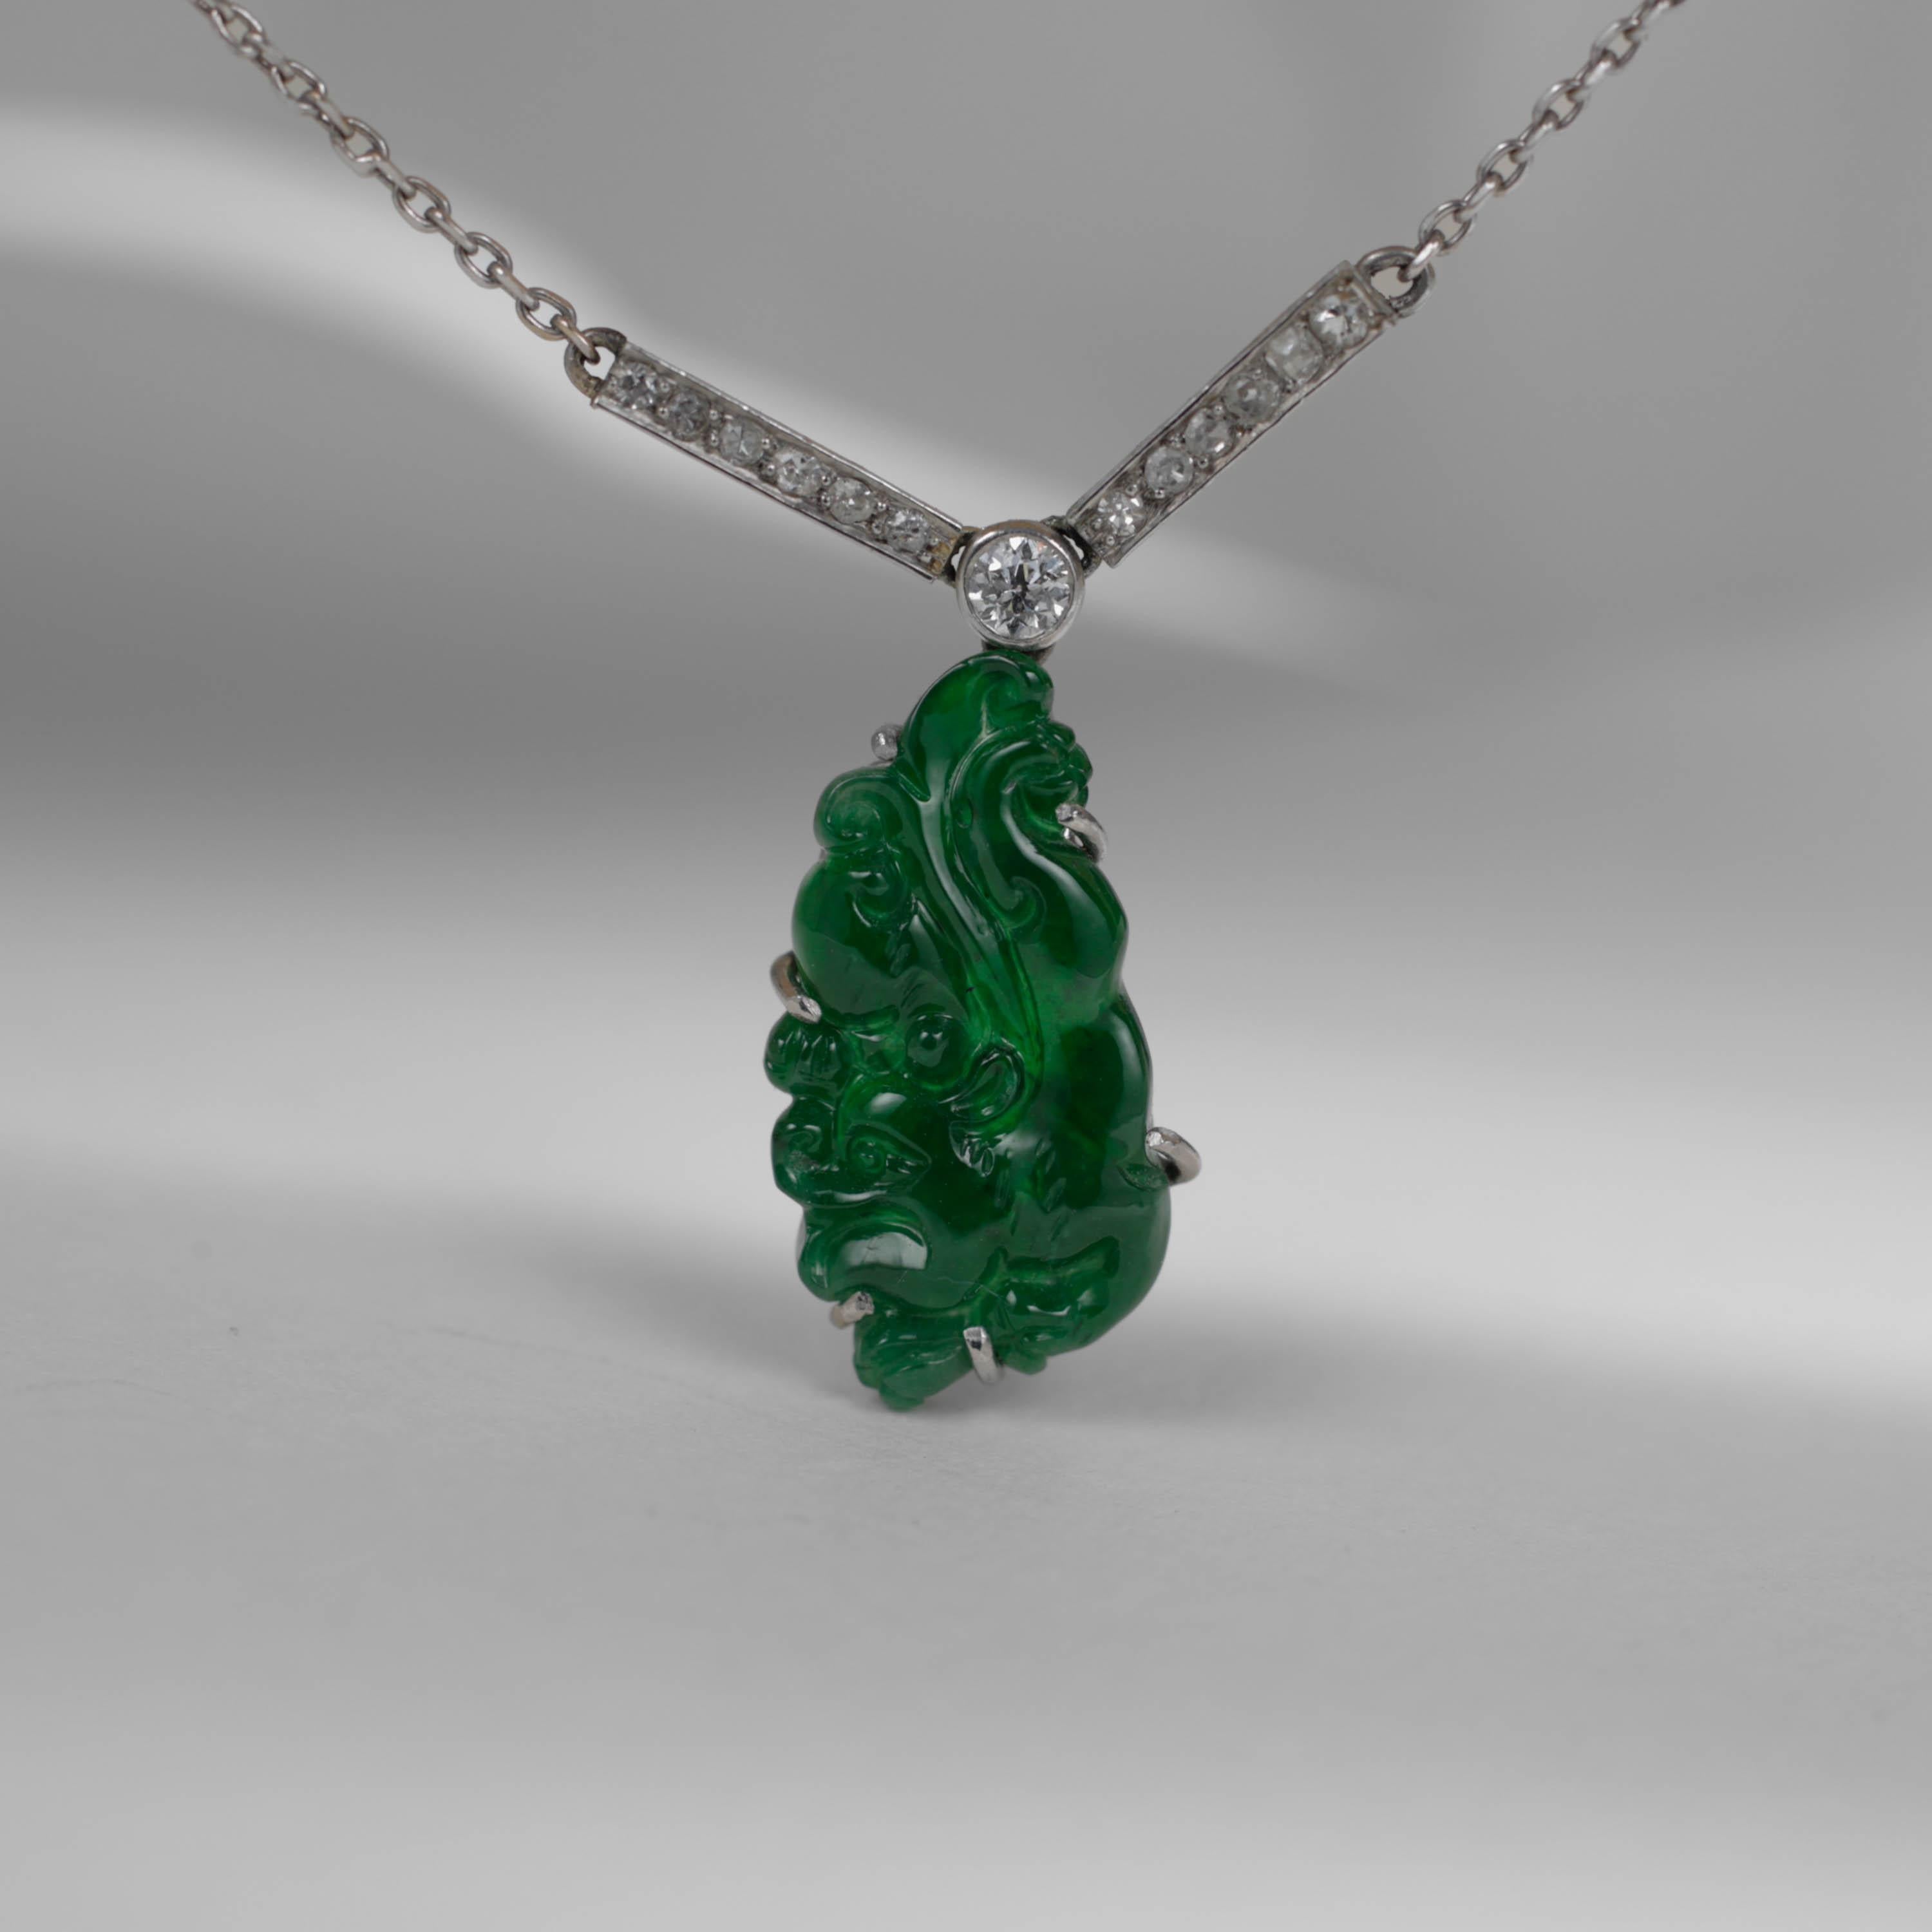 Dieser prächtige Anhänger, der in den 1920er Jahren geschaffen wurde, zeigt das Seltenste vom Seltenen: einen GIA-zertifizierten, natürlichen und unbehandelten Jadeit, der eine satte, smaragdgrüne Farbe und hohe Lichtdurchlässigkeit aufweist. Jade